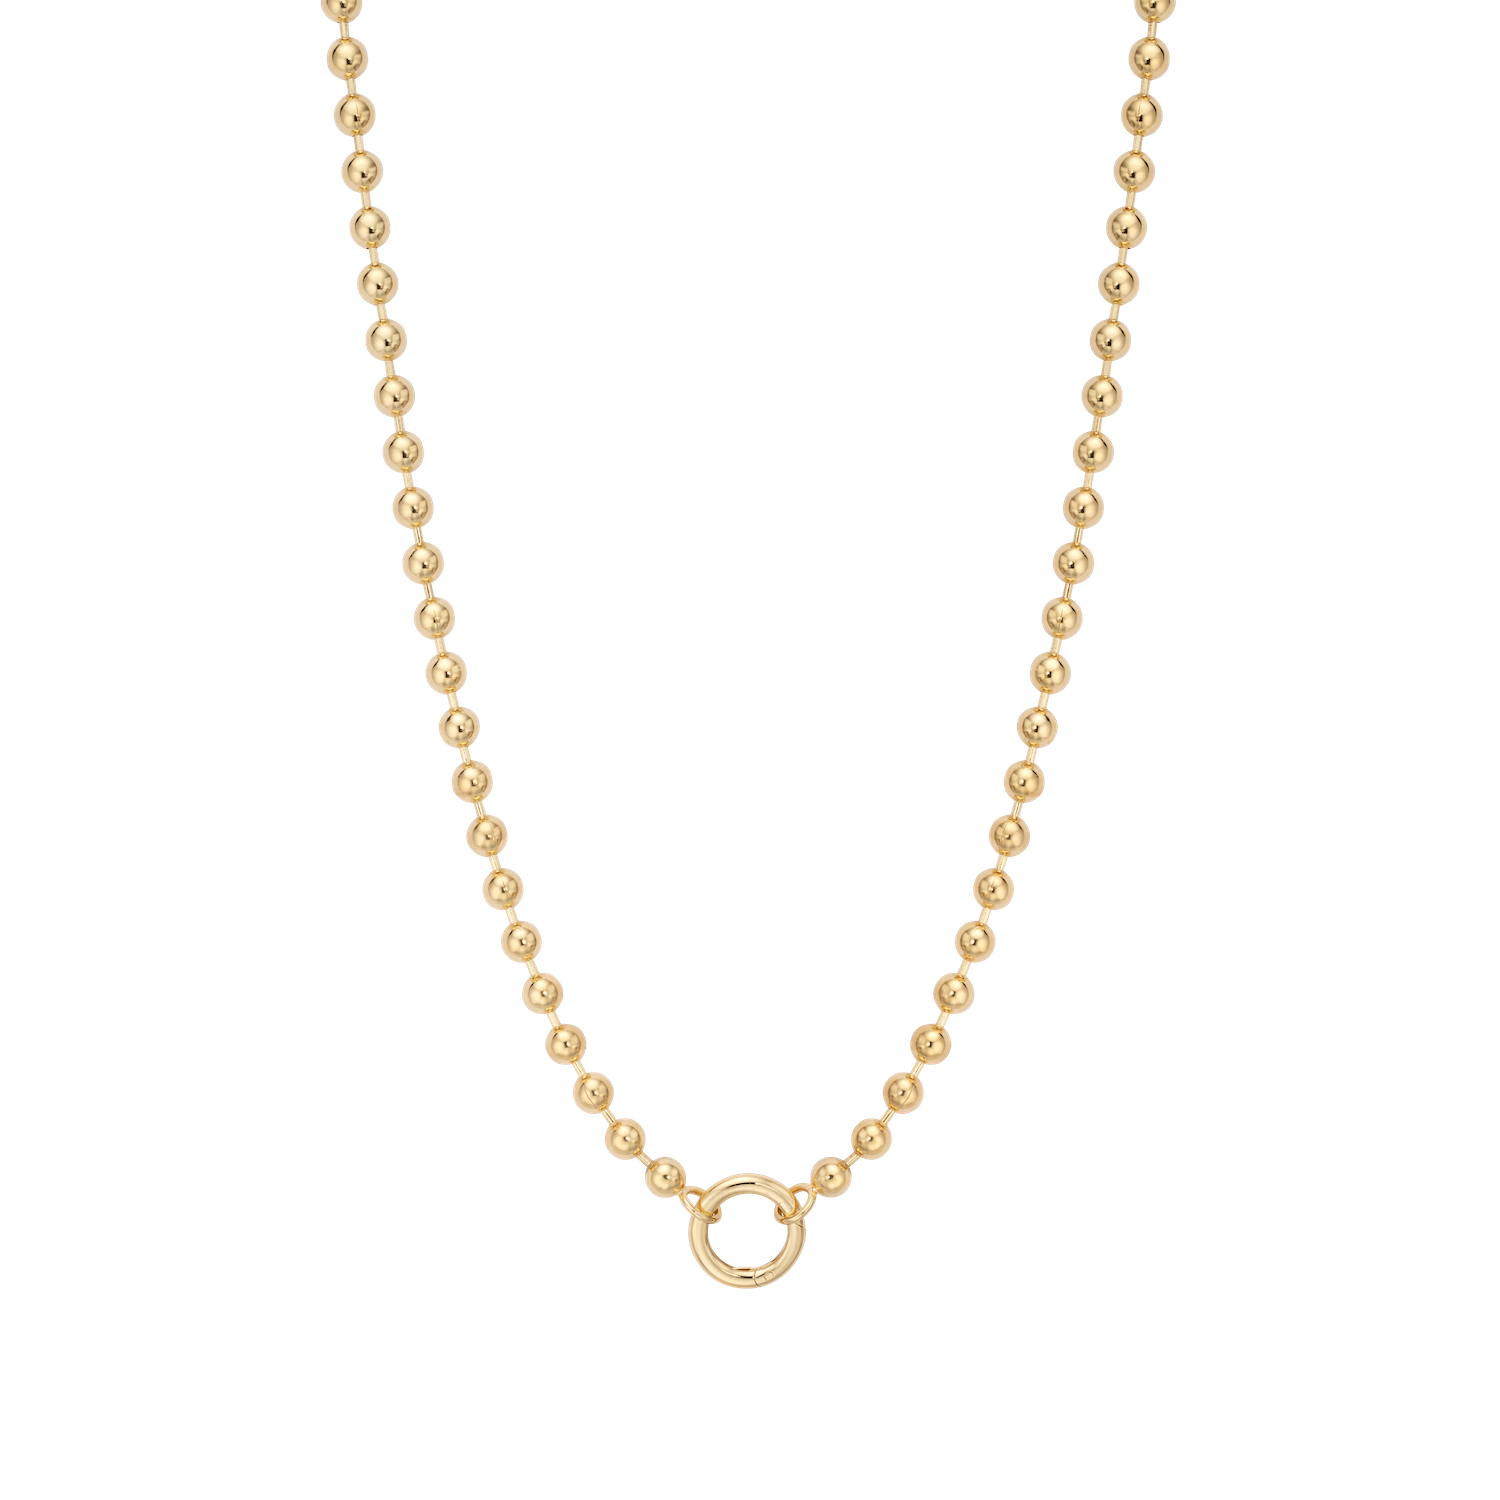 Medici Loop Charm Necklace - 18"